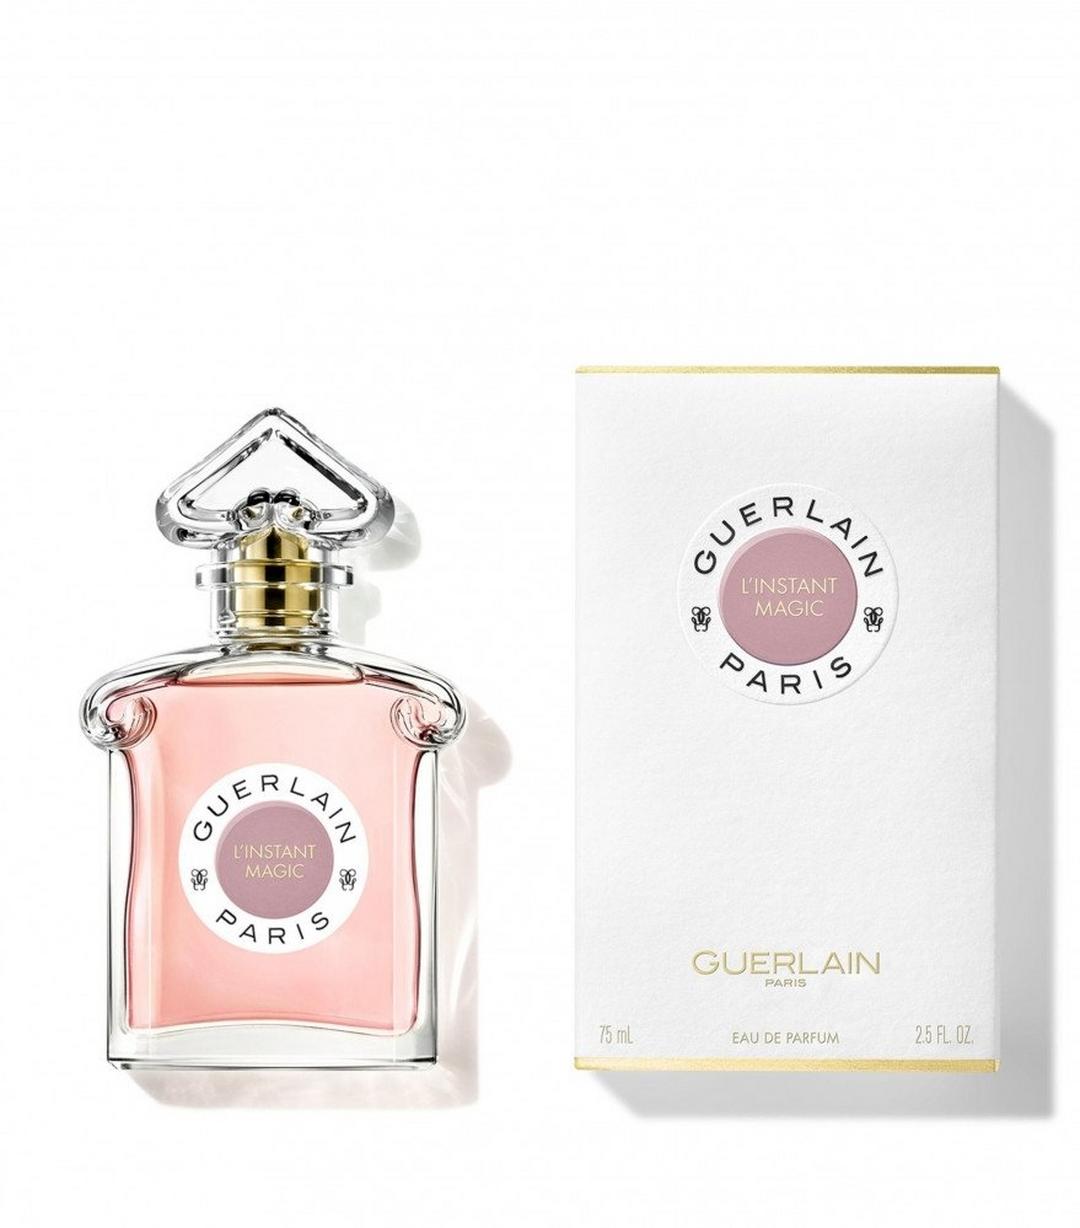 Guerlain L'Instant Magic for Women Eau de Parfum 75ml